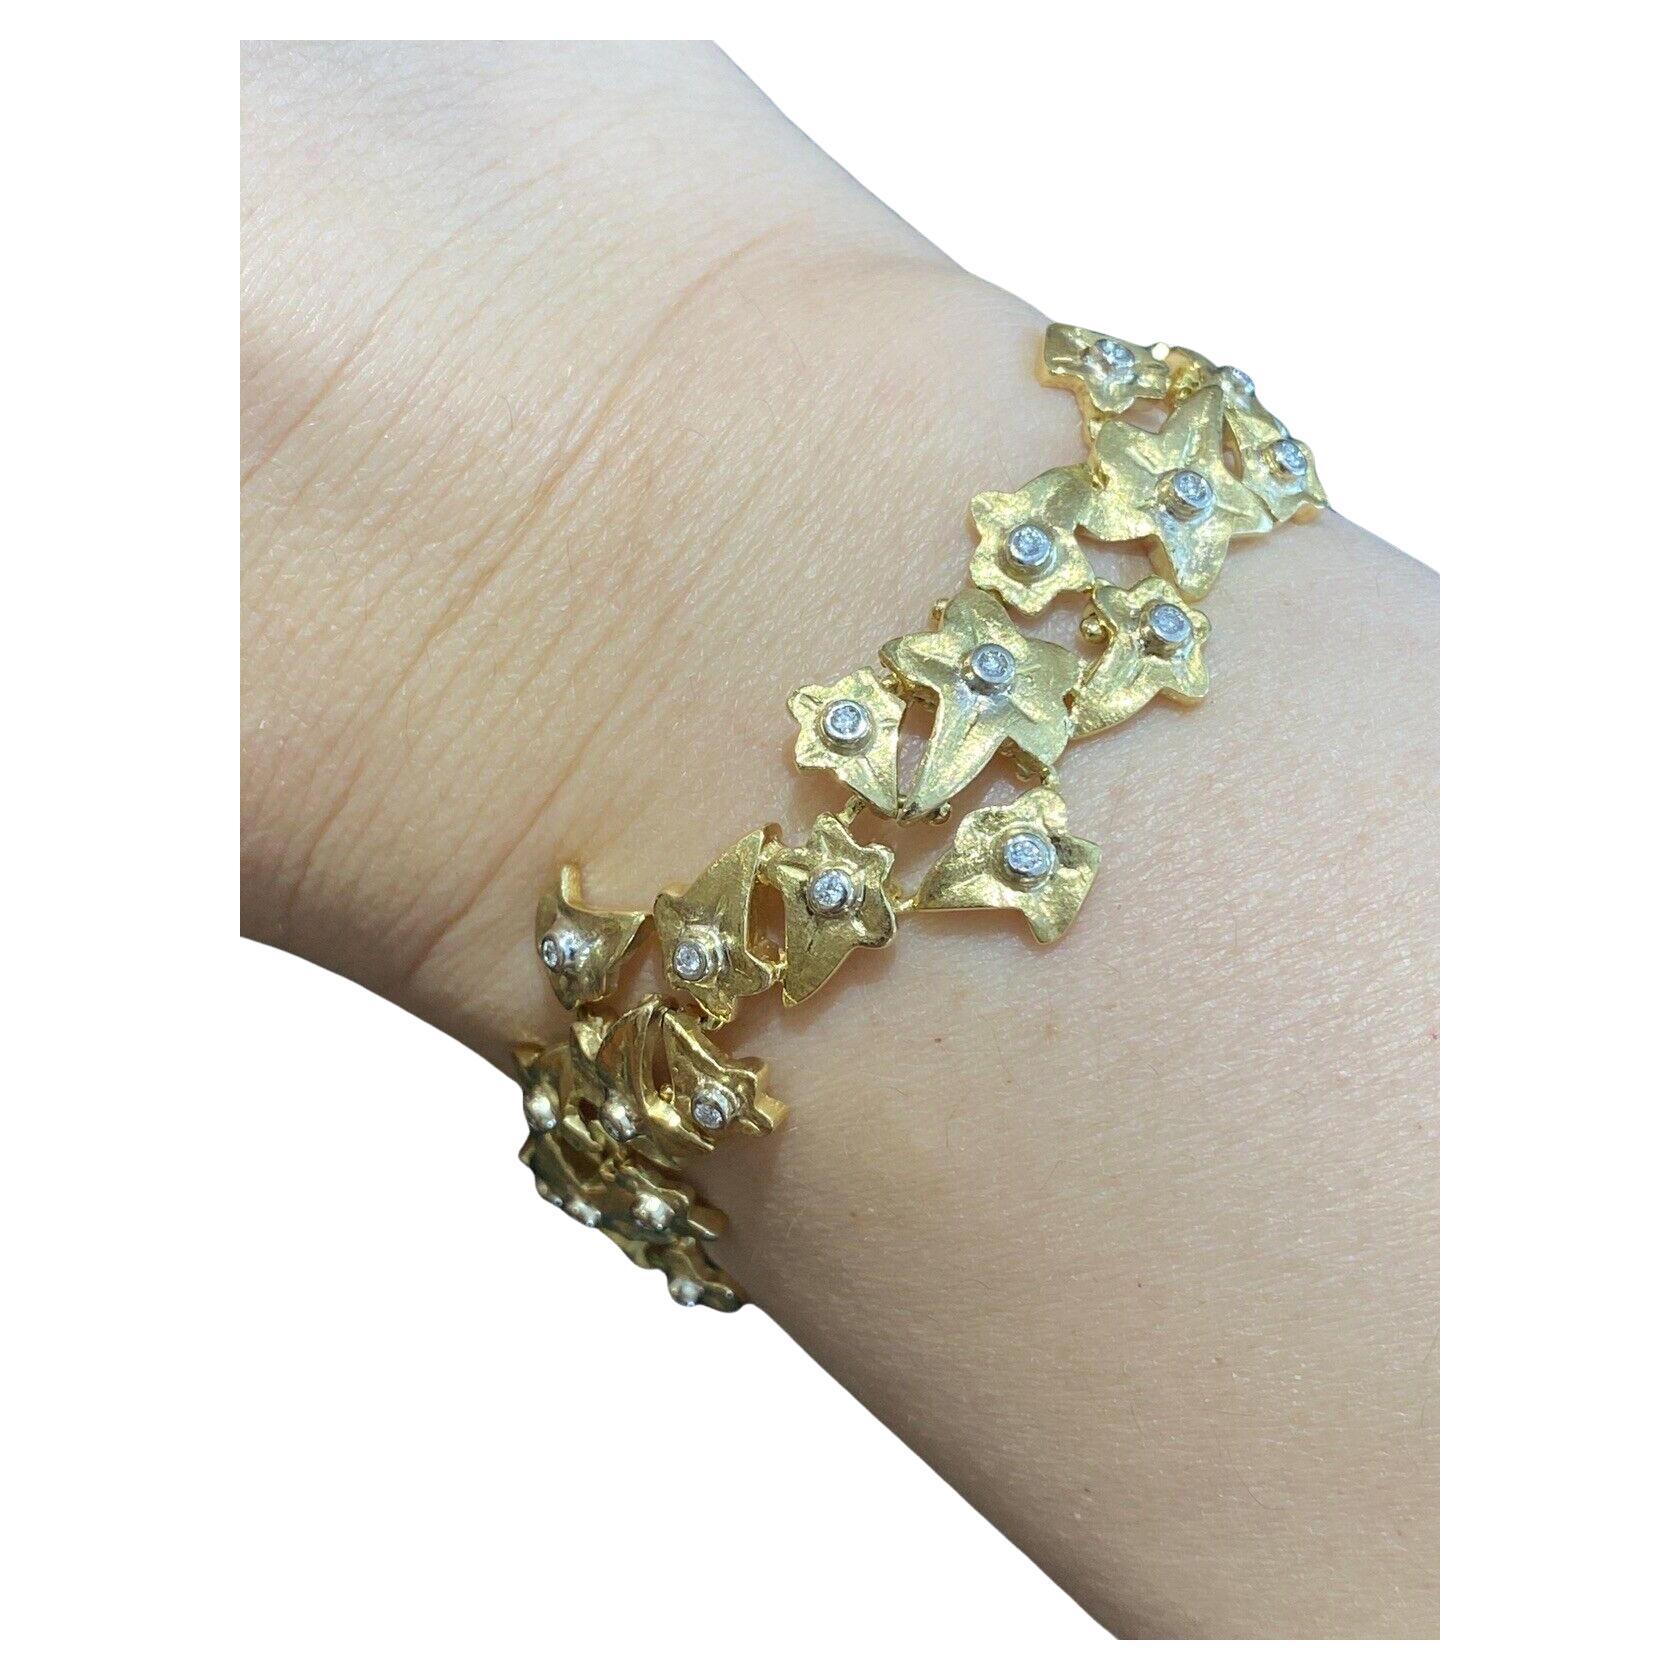 Bracelet Vintage ROBERTO COIN Feuille de diamant en or jaune 18k

Le bracelet Leaf Diamond de Roberto Coin présente 39 diamants ronds de taille brillante sertis dans de l'or jaune 18k.

Le poids total des diamants est de 0,60 carat. 
La qualité du